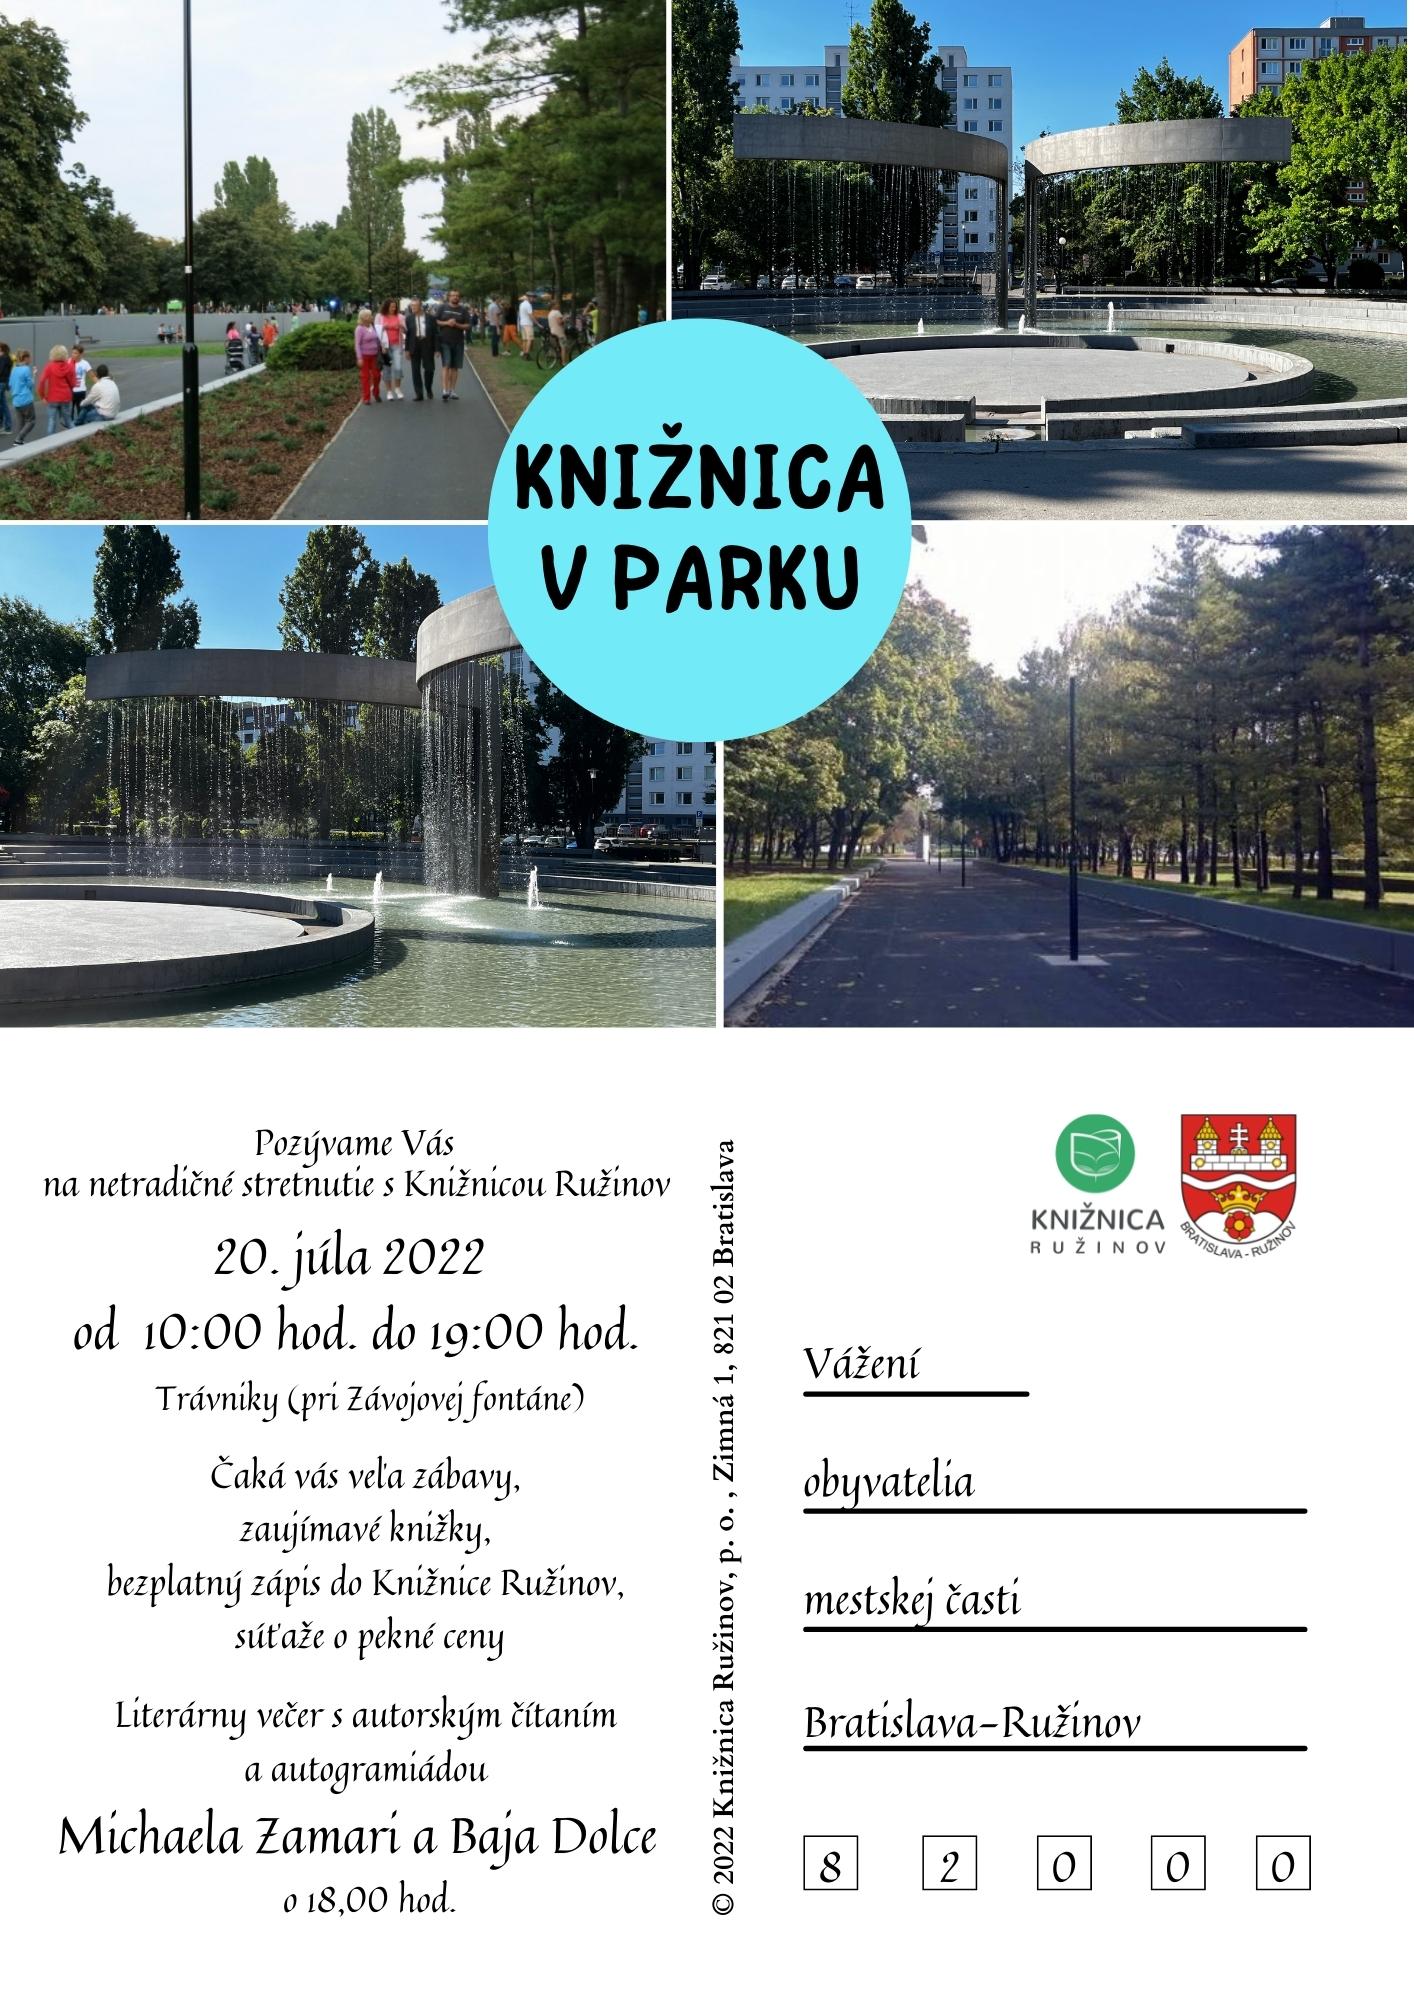 Knižnica v parku (A. Hlinku) 20.7.2022 – A4